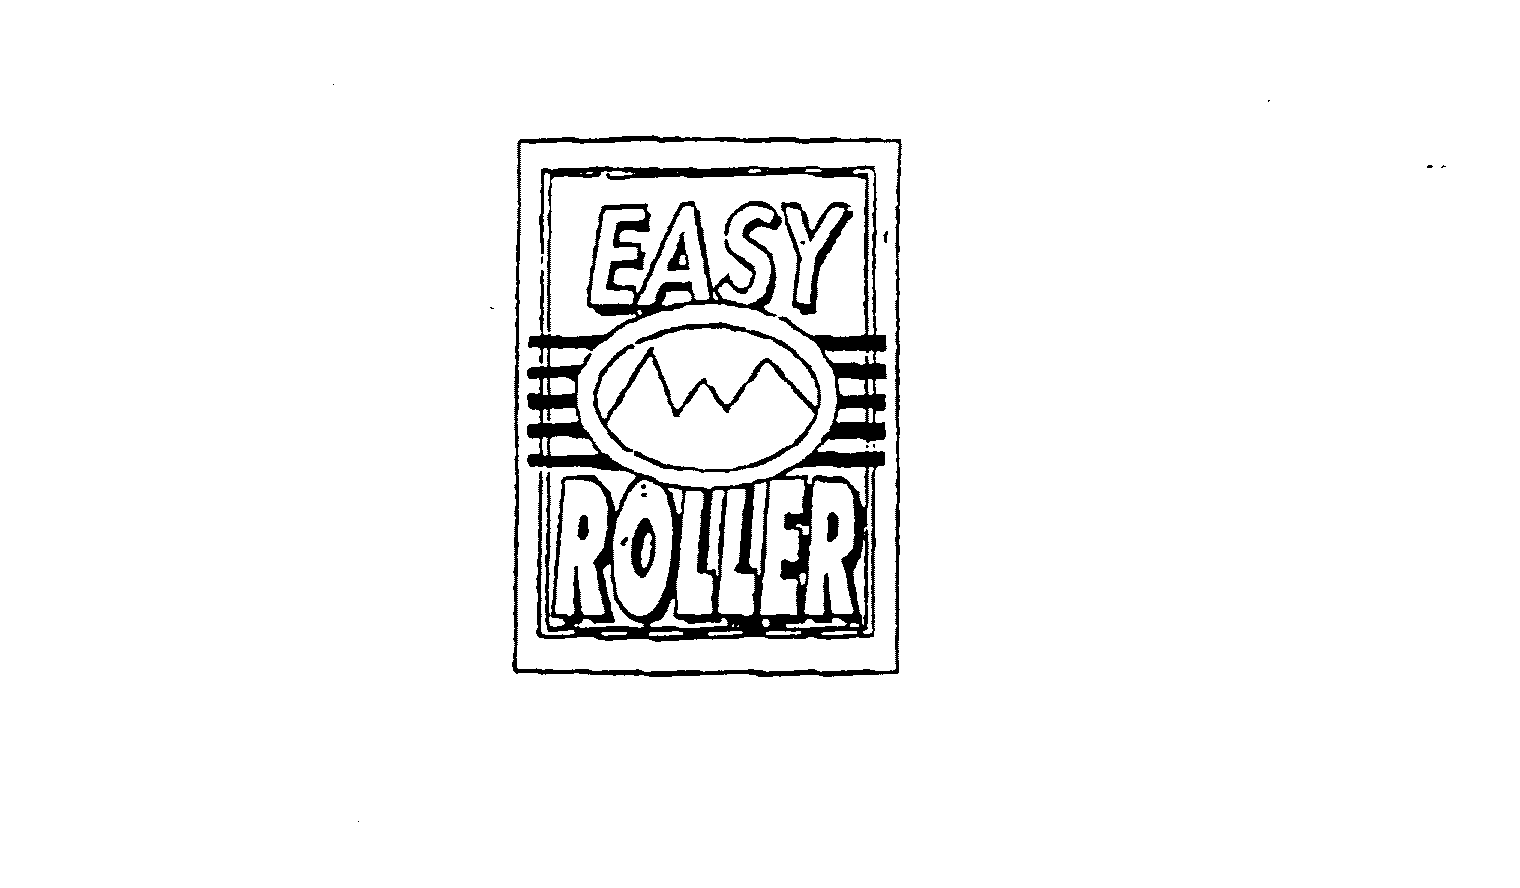 EASY ROLLER